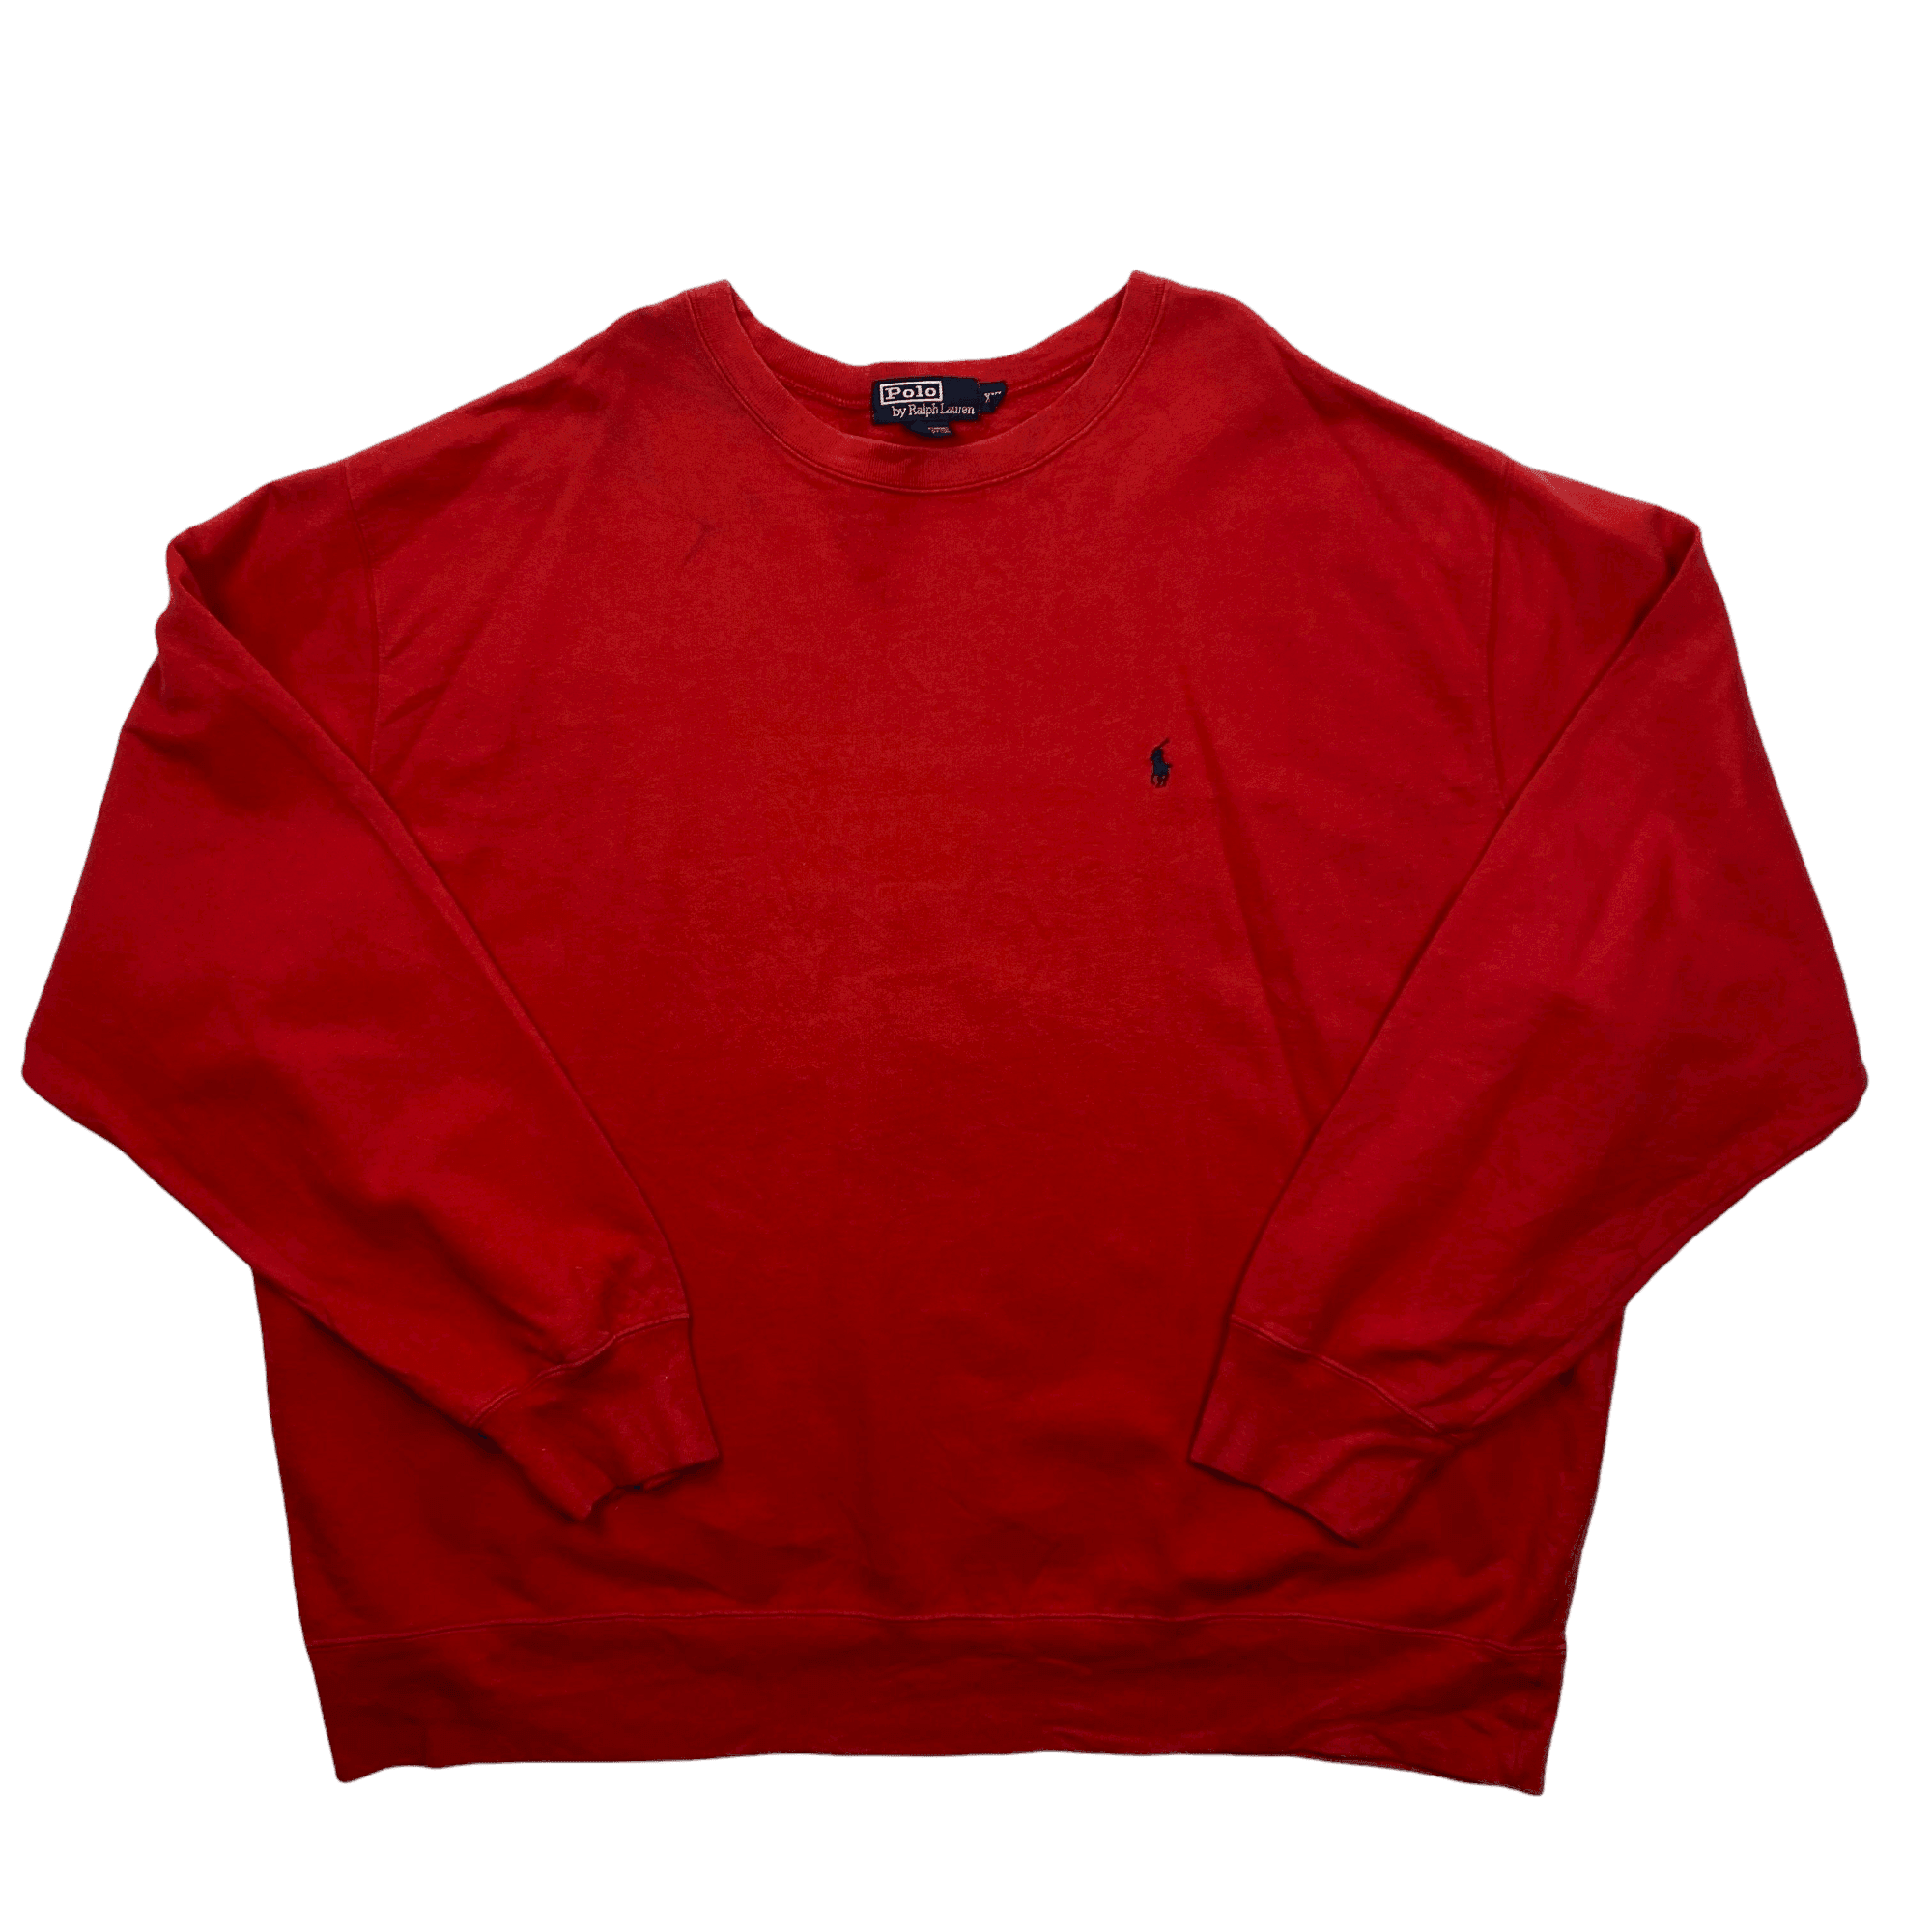 Vintage 90s Red Polo Ralph Lauren Sweatshirt - XXL - The Streetwear Studio